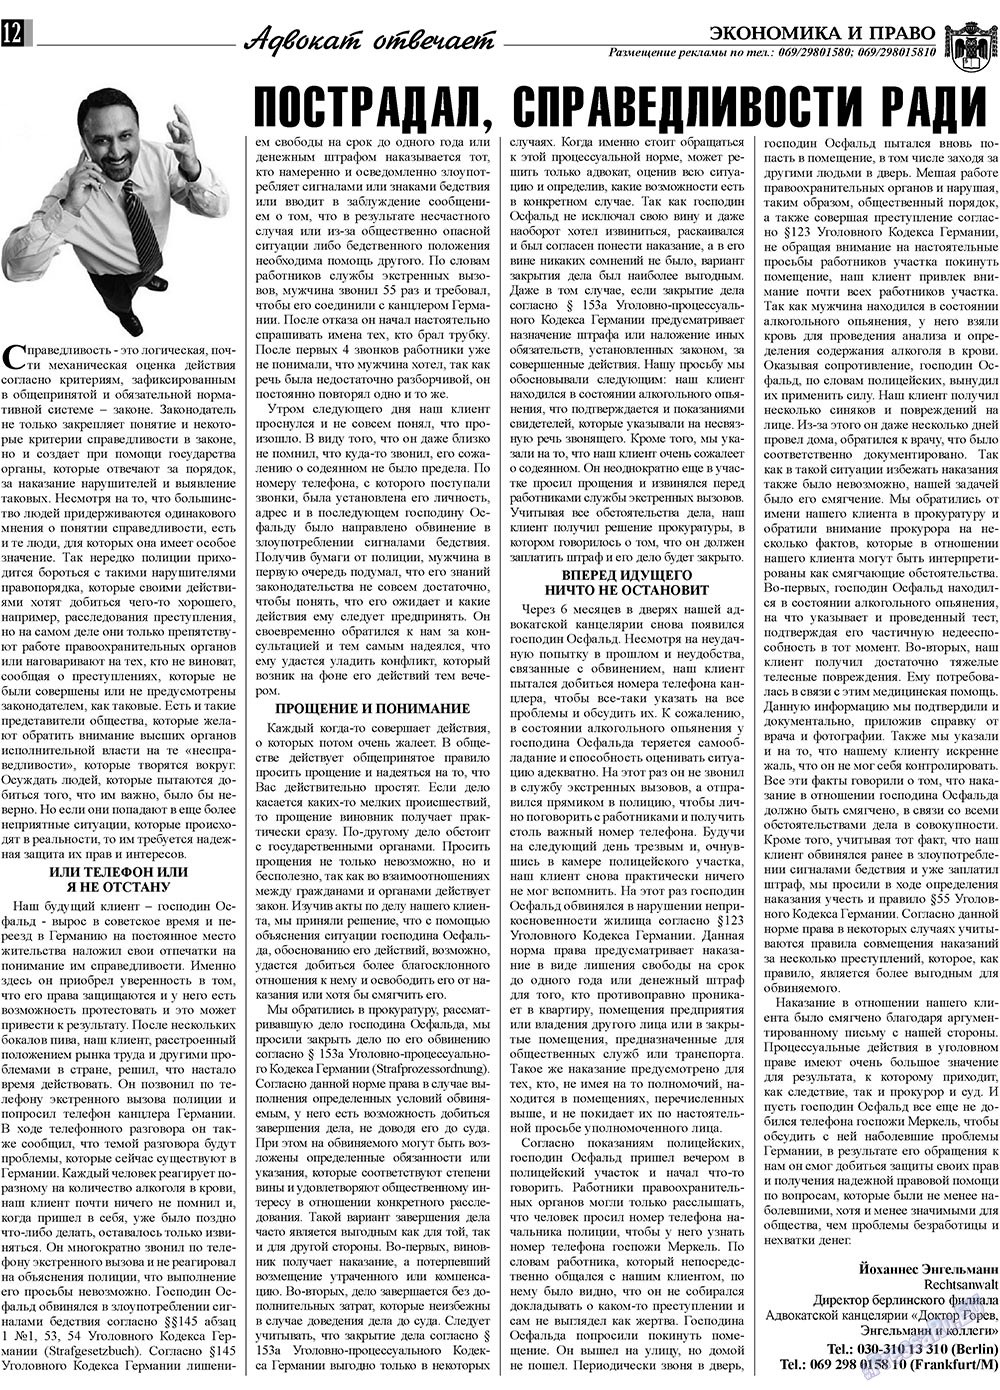 Экономика и право, газета. 2009 №7 стр.12